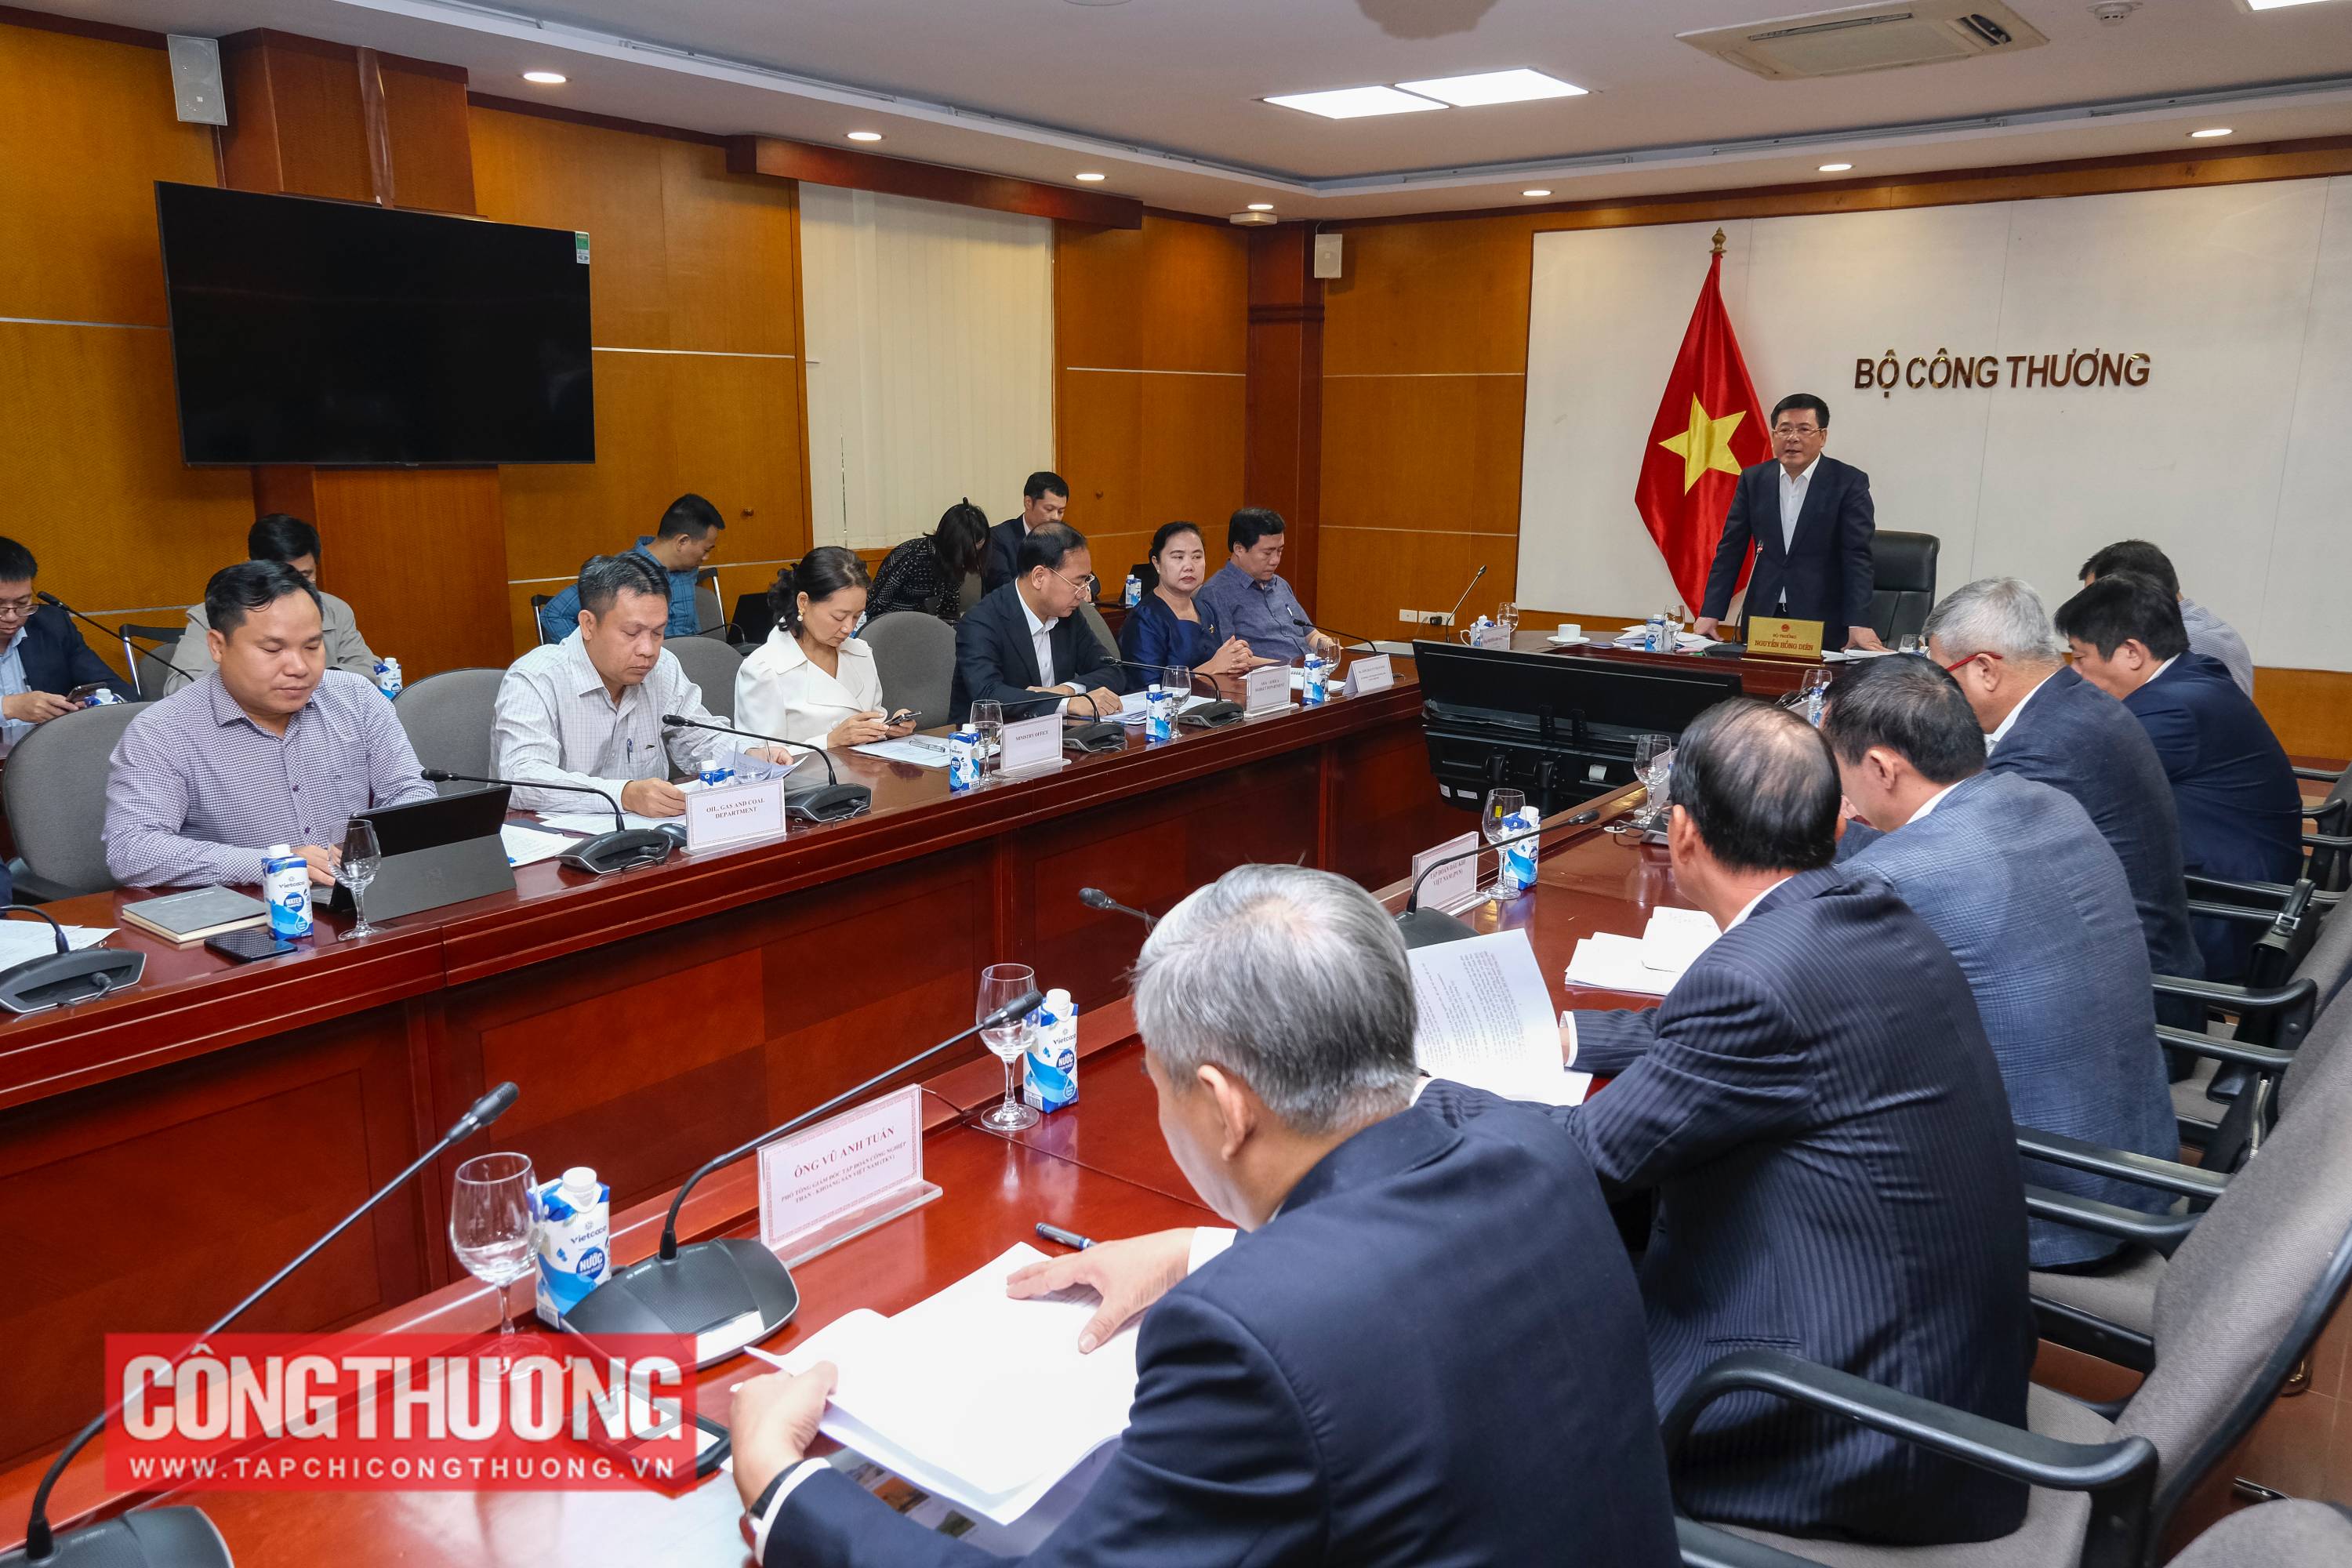 Bộ trưởng Bộ Công Thương Nguyễn Hồng Diên chủ trì Hội nghị thúc đẩy hợp tác mua bán than giữa Việt Nam và Lào